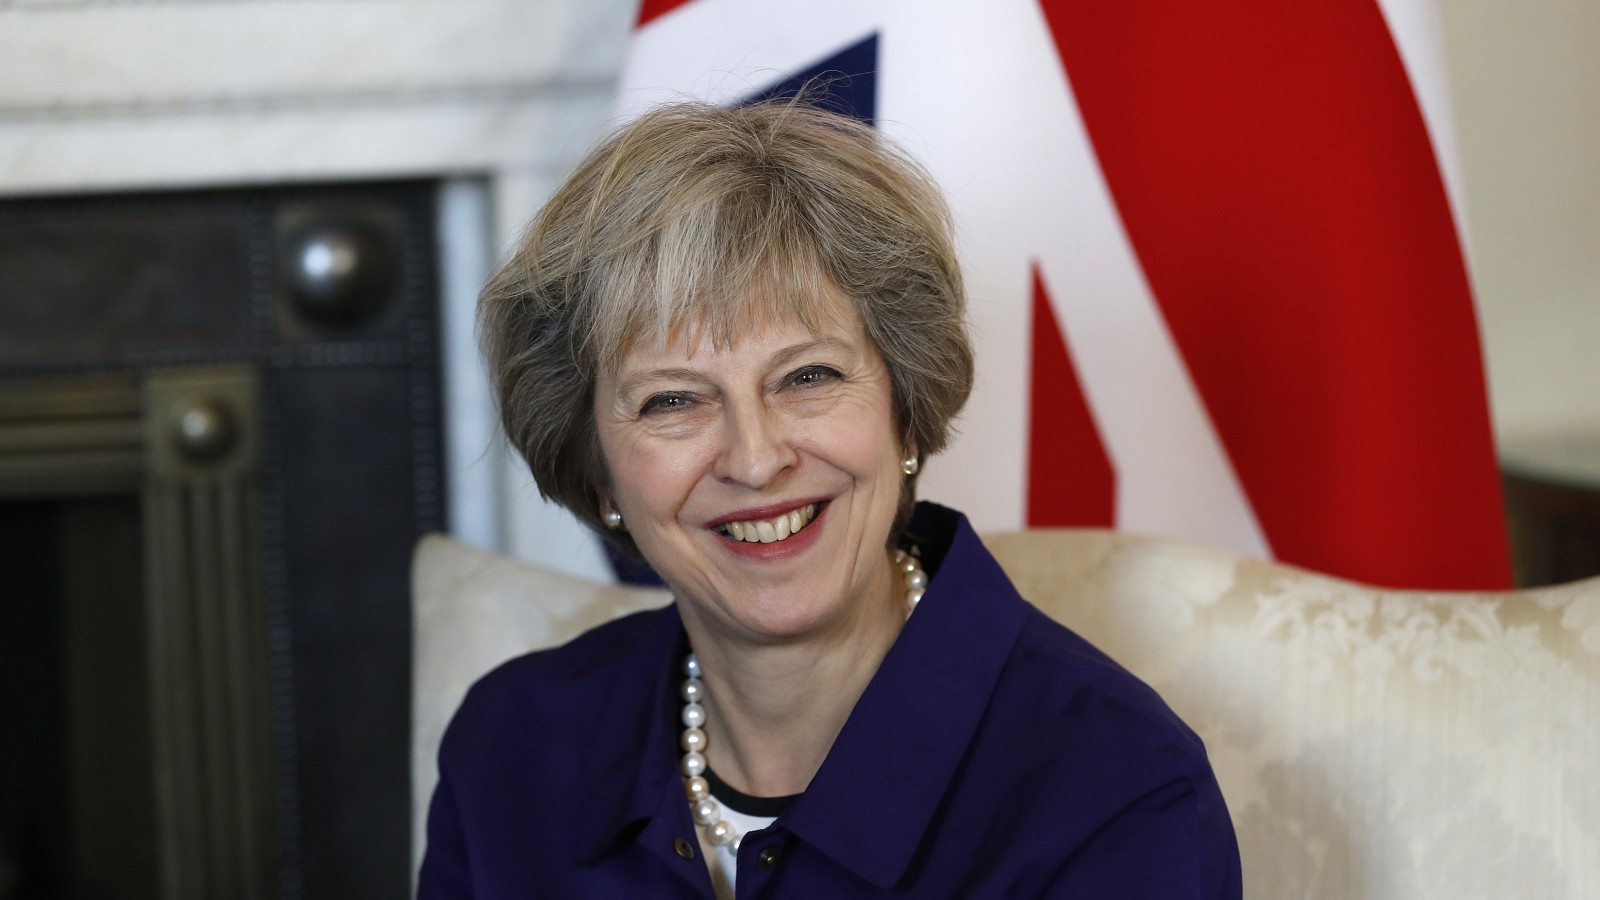 ראשת ממשלת בריטניה, תרזה מיי. תזדקק לאישור הפרלמנט על מנת להתחיל משא ומתן ליציאה מהאיחוד האירופי (צילום: סוכנות AP).